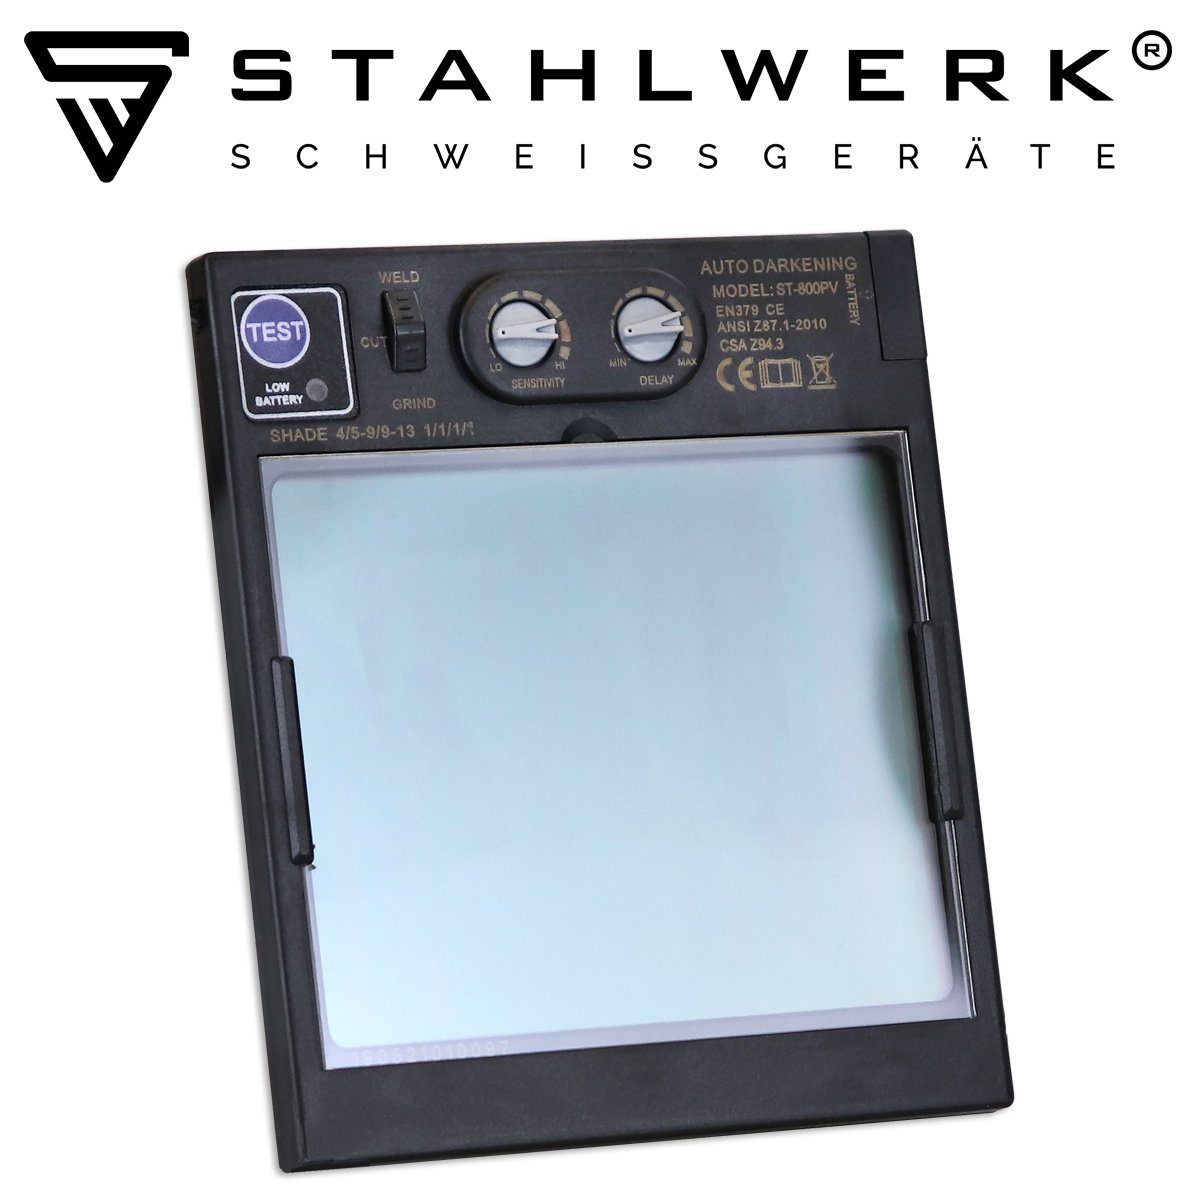 STAHLWERK Schweißhelm COLOUR 4-tlg) Schweißhelm ST-800PV Vollautomatik REAL (Paket